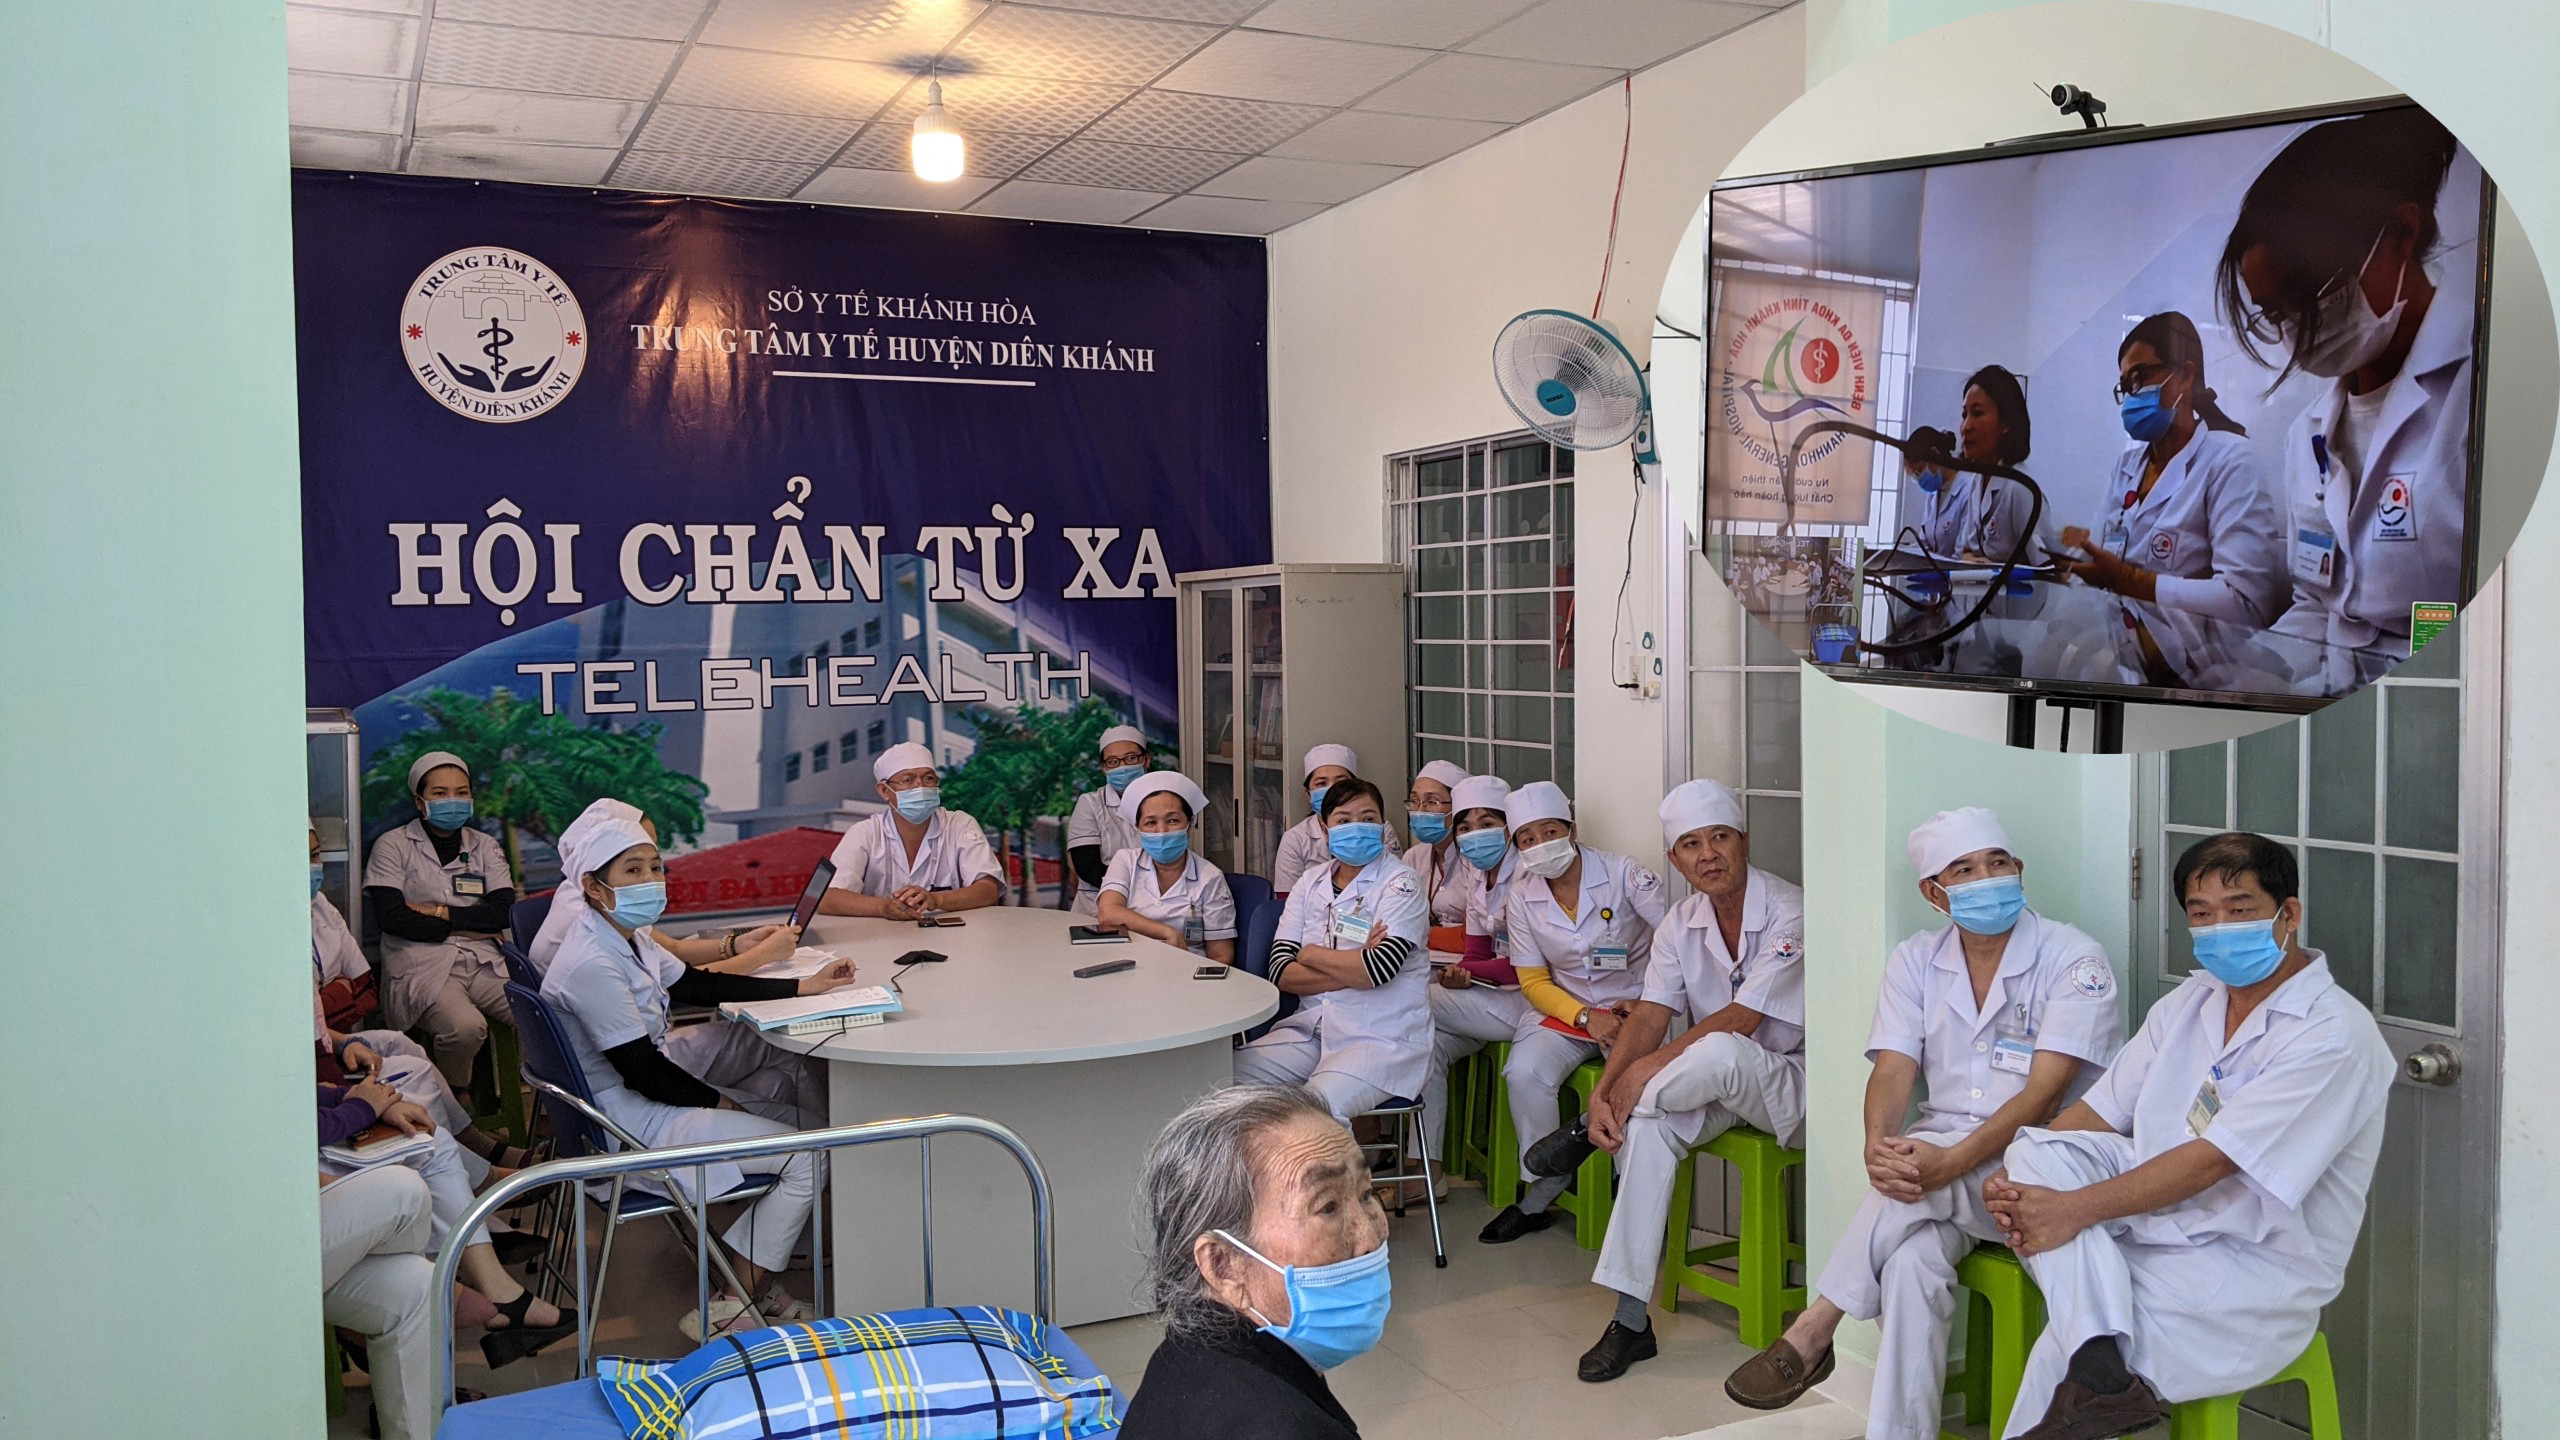 Hội chẩn từ xa - liên kết với bệnh viện tỉnh Khánh Hòa